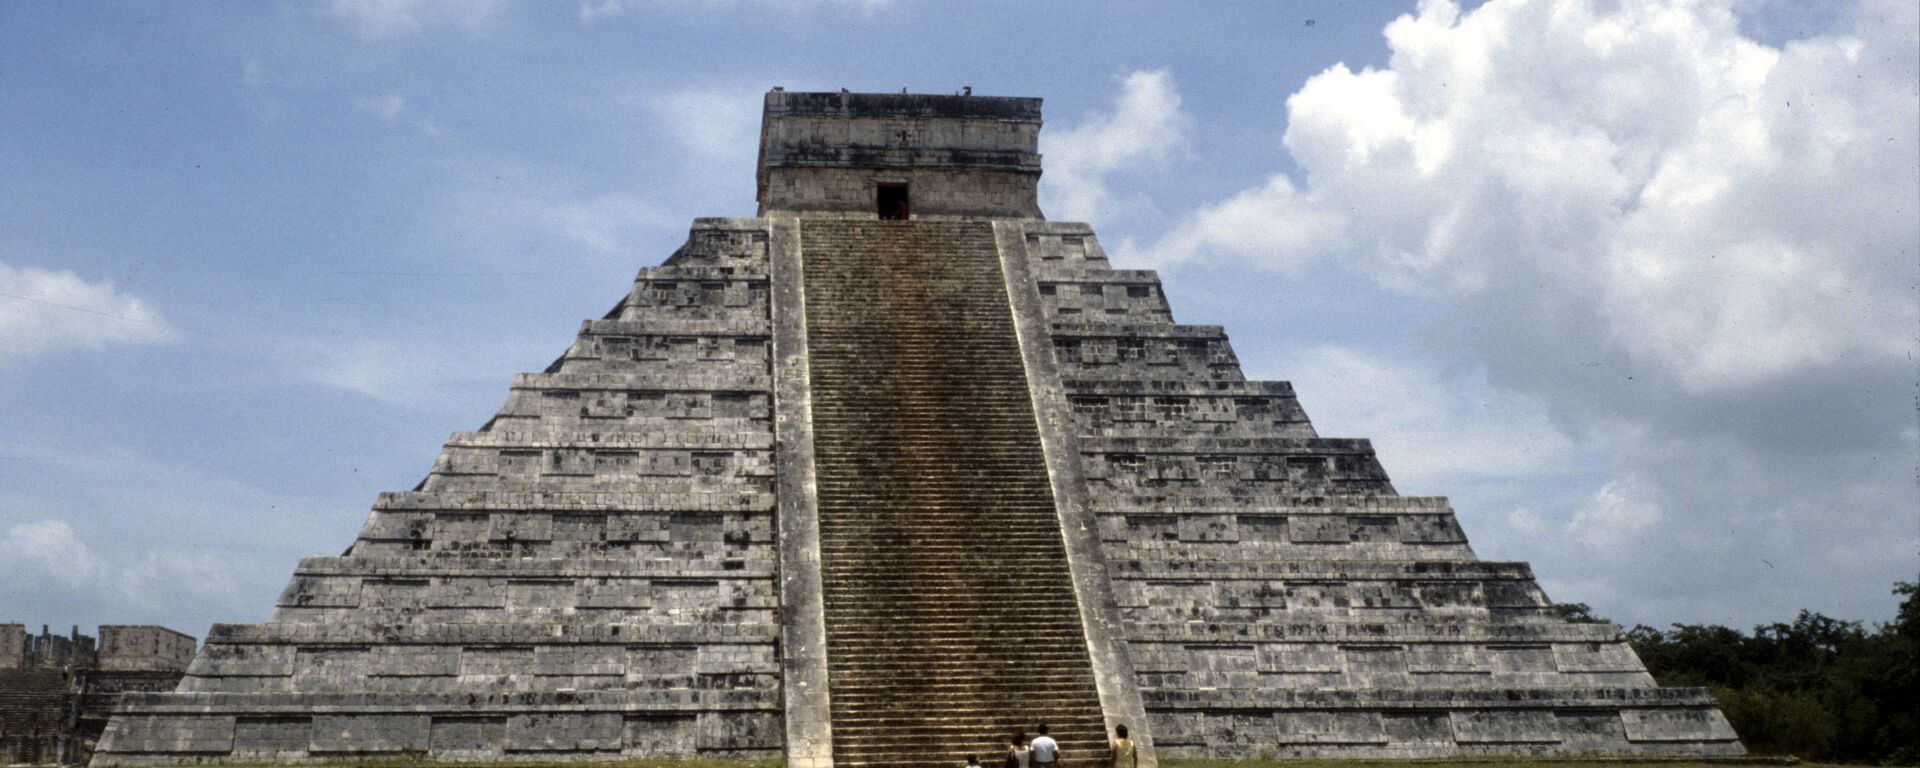 El templo de Kukulcán, en Chichén Itzá, uno de los complejos arqueológicos mayas más importantes de México - Sputnik Mundo, 1920, 14.09.2021